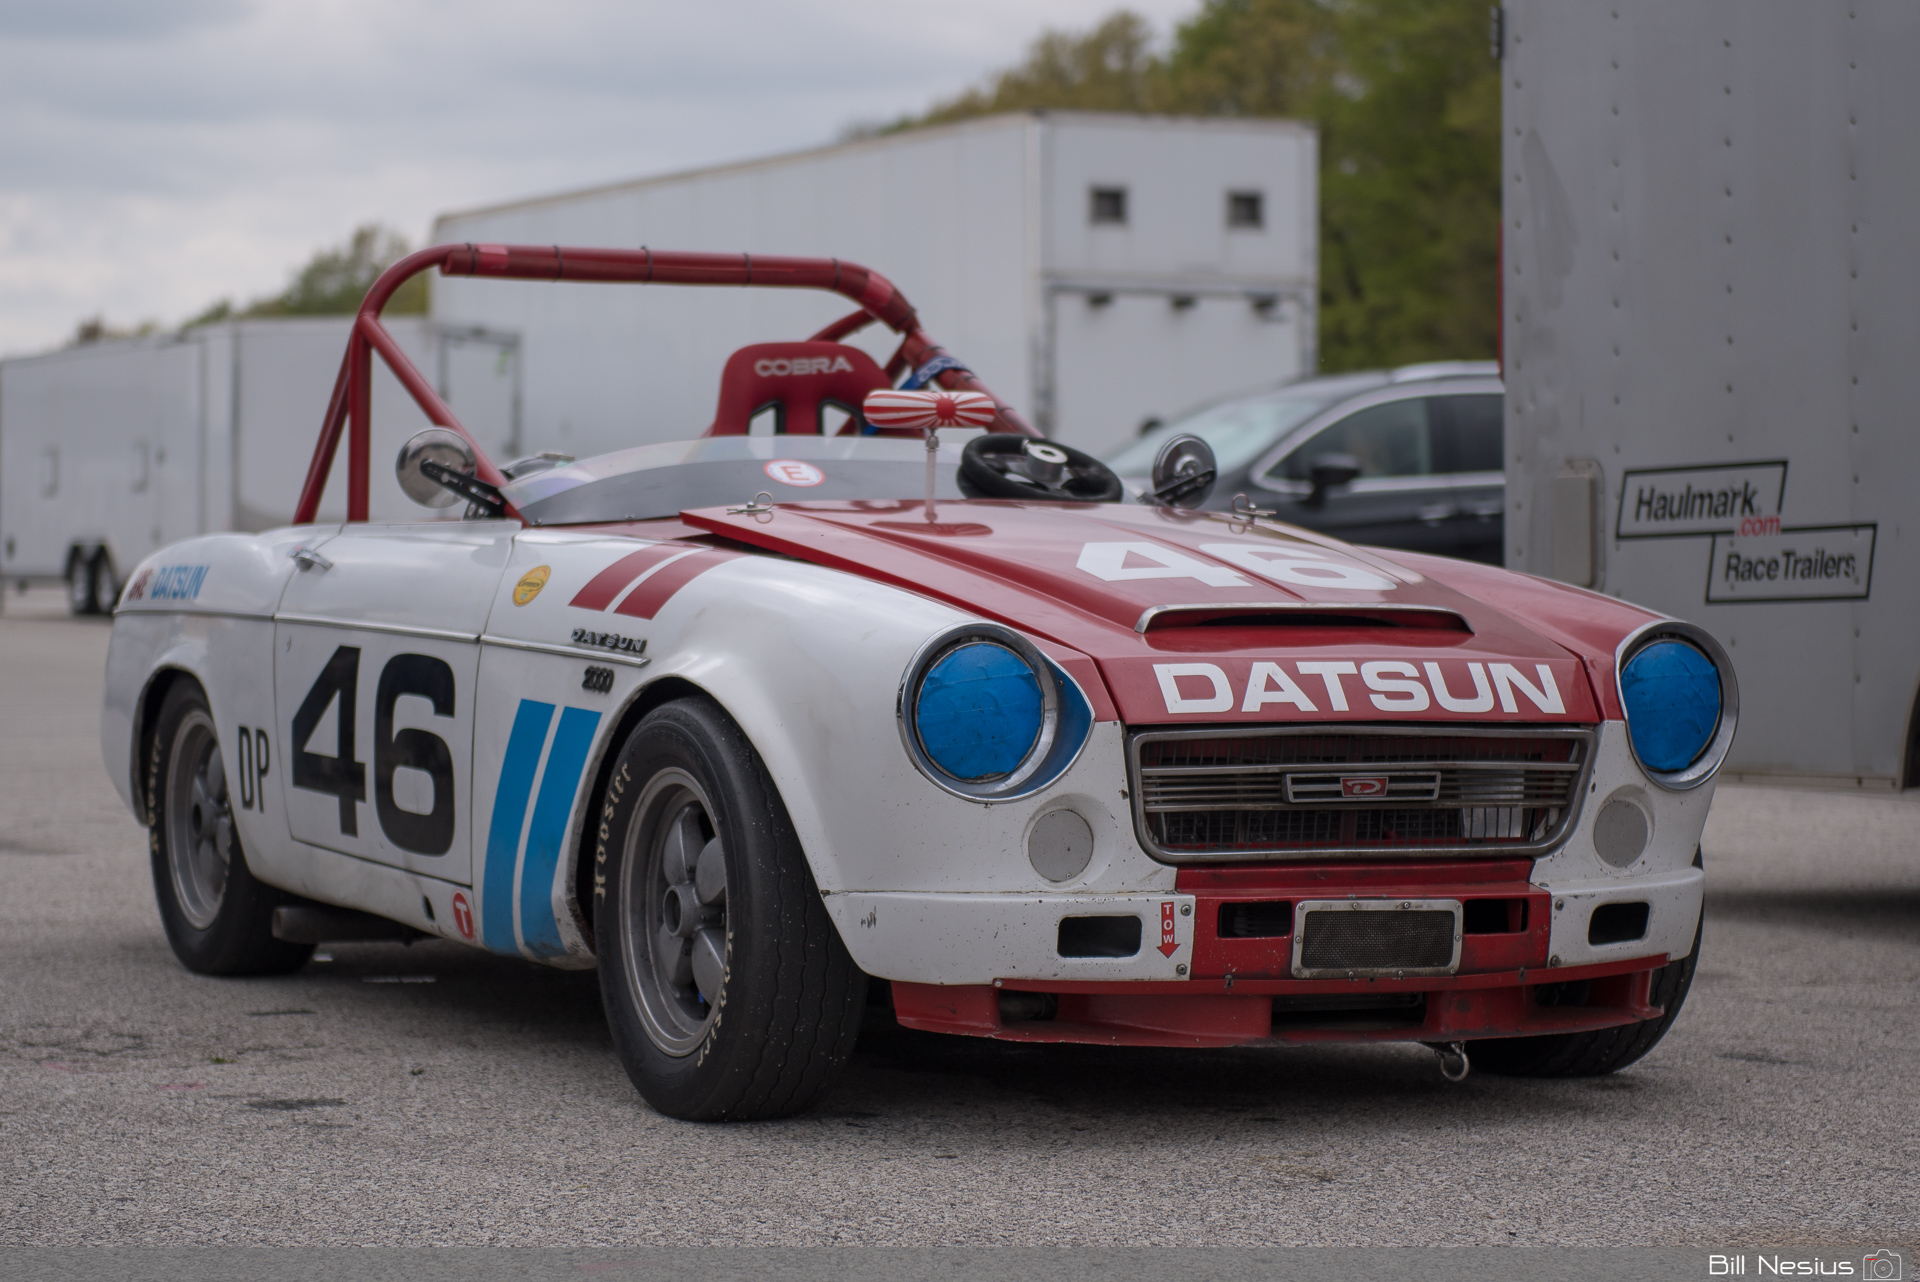 1968 Datsun 2000 Roadster Number 46 / DSC_1140 / 4